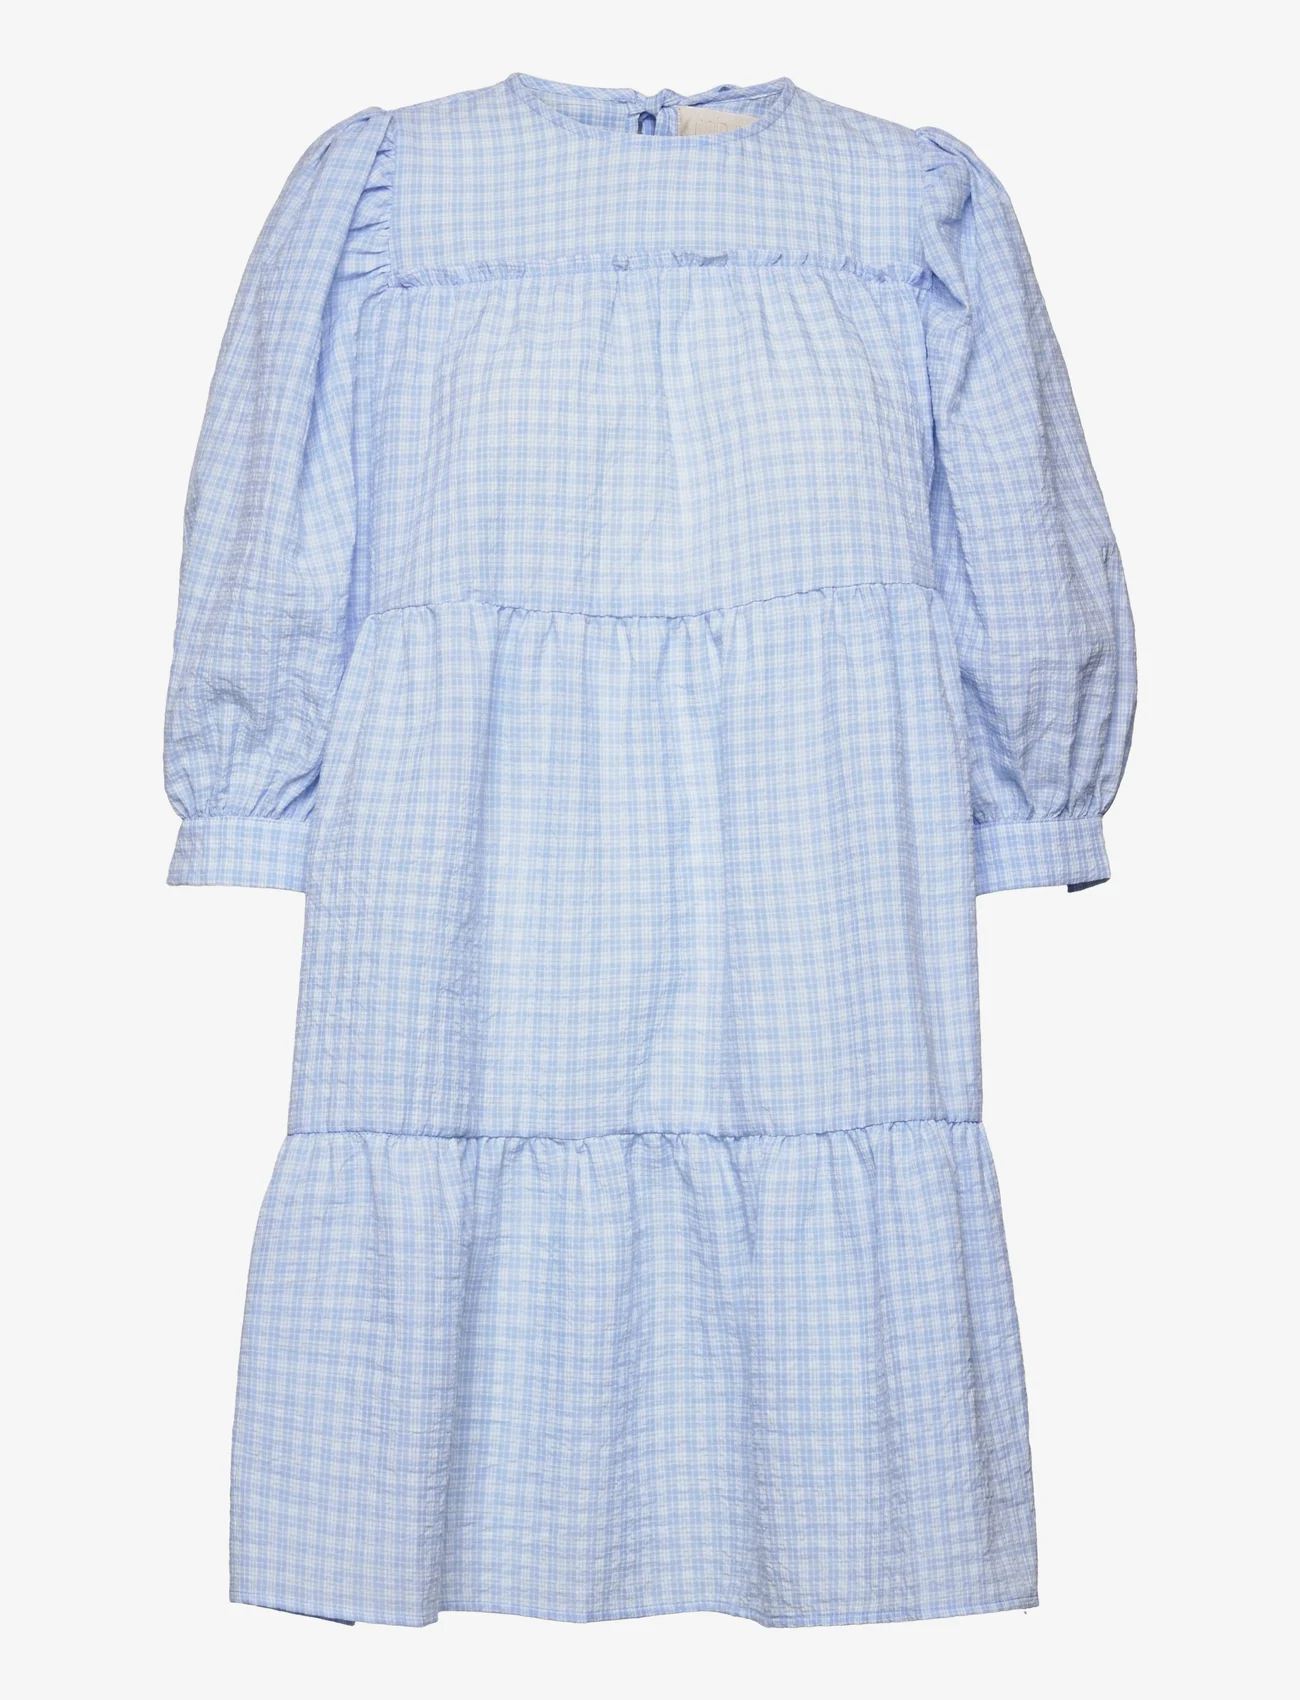 Minus - Rowen kjole - lyhyet mekot - blue checked - 0